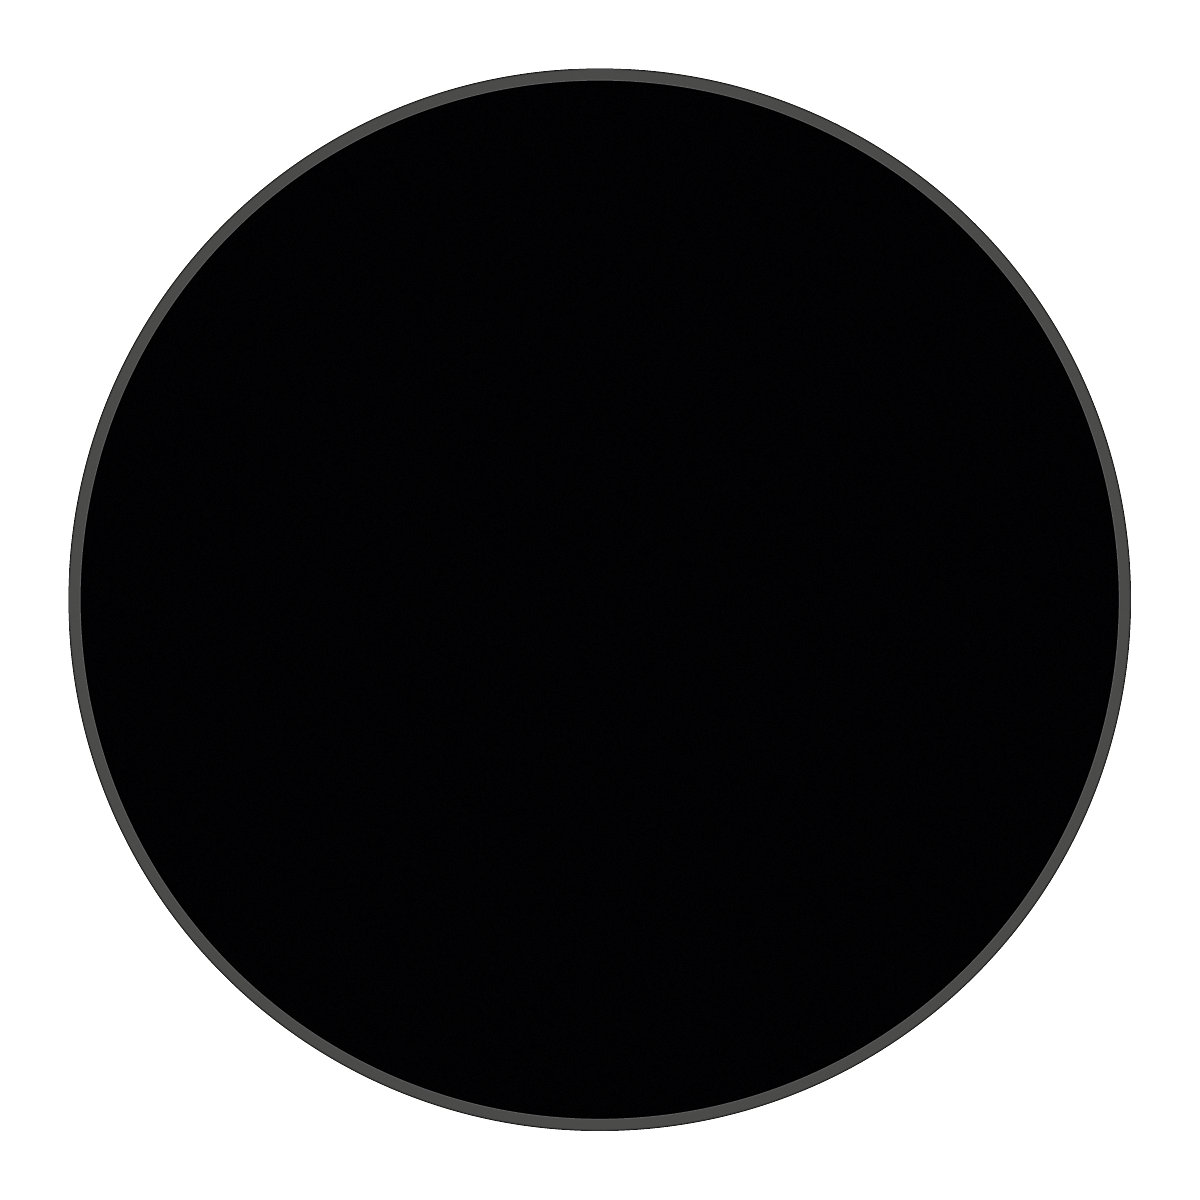 PVC padlójelölések, kör alakú, cs. e. 100 db, fekete